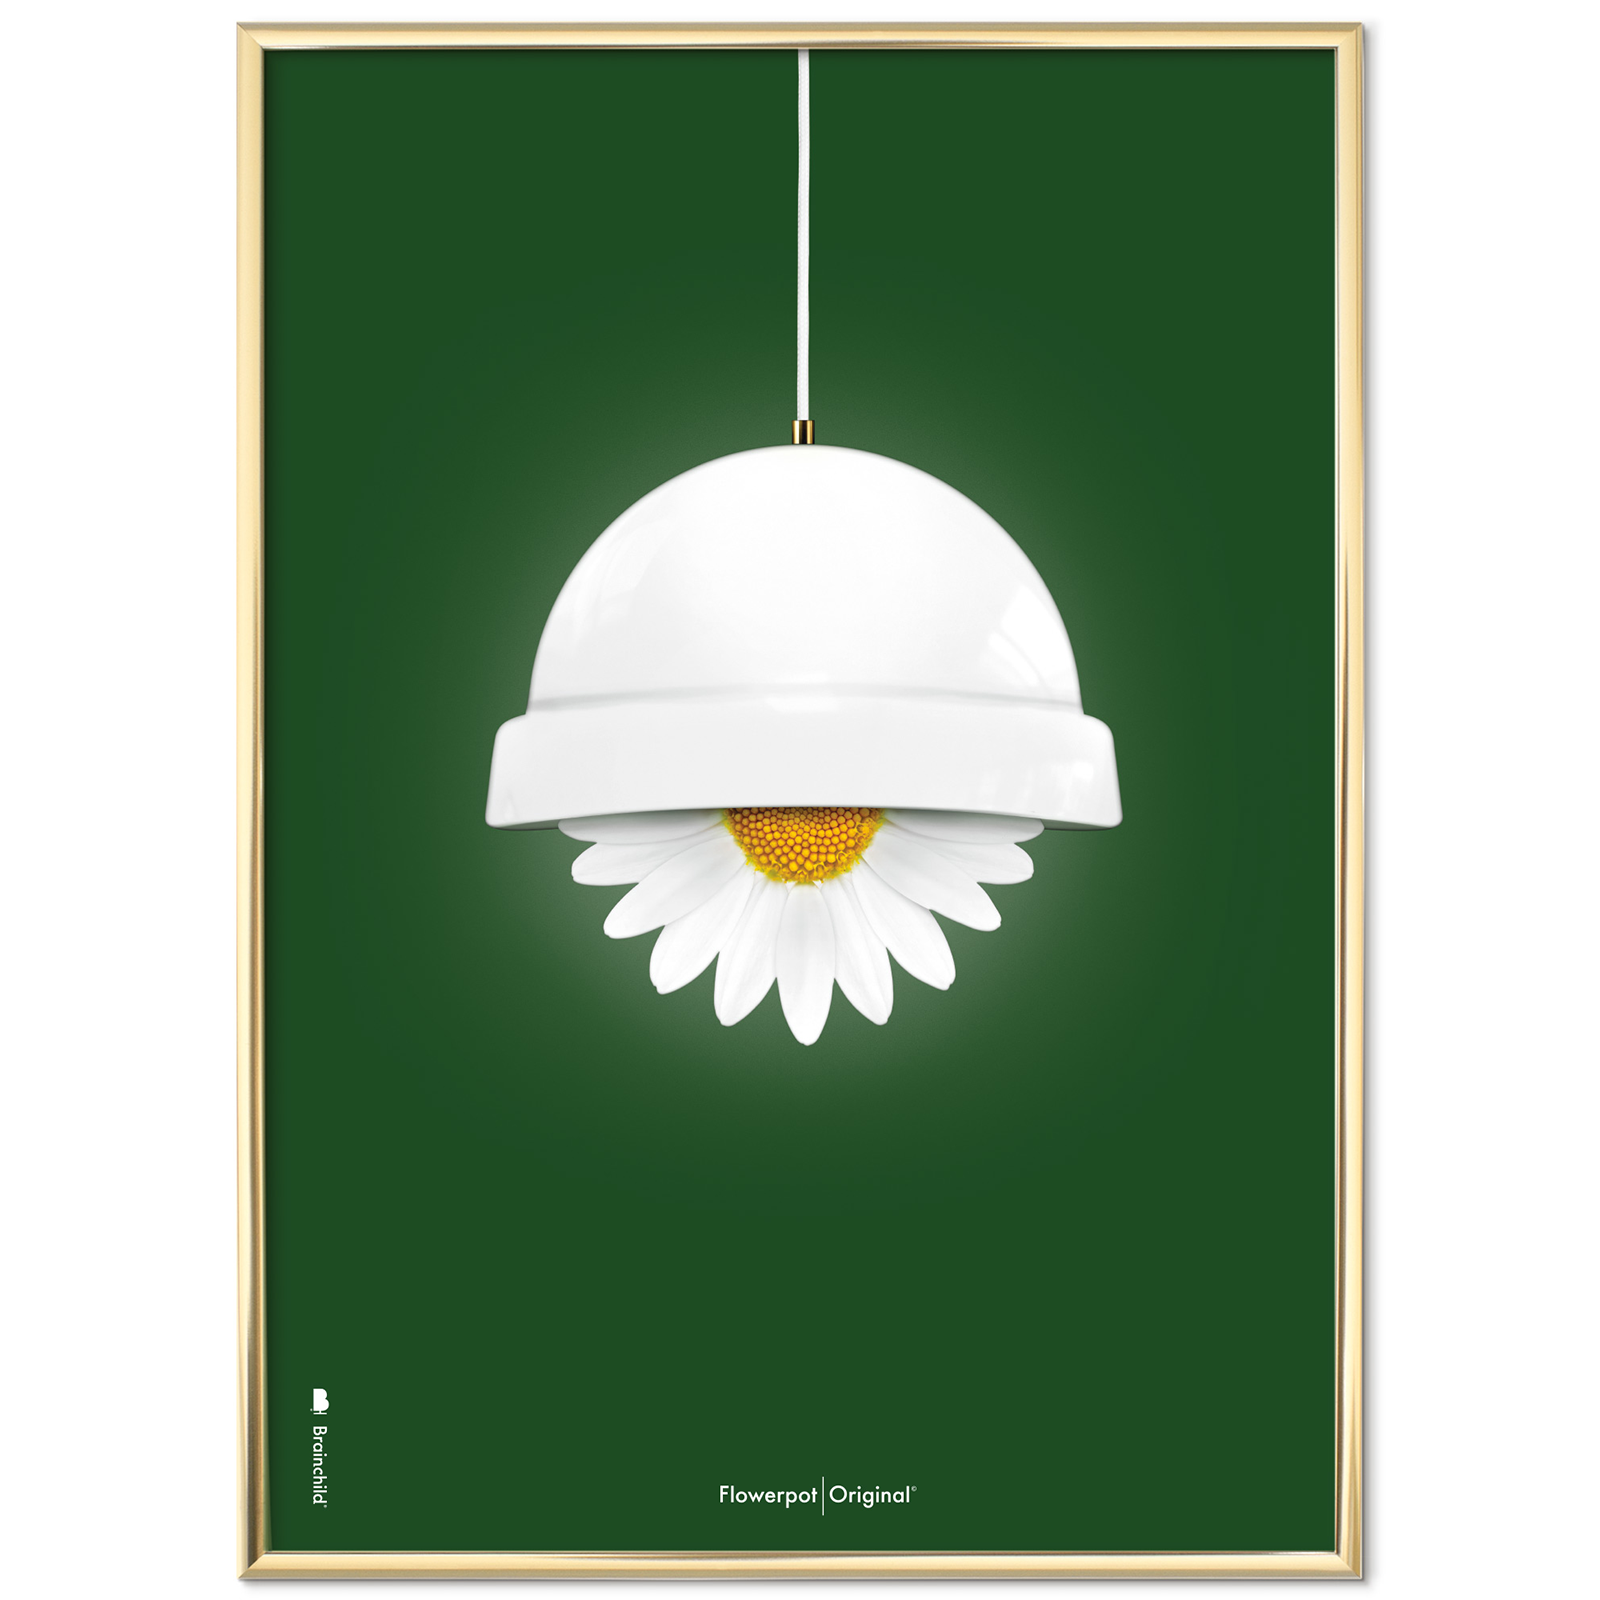 Plakat med Flowerpot - Grøn Klassisk - 50x70 cm